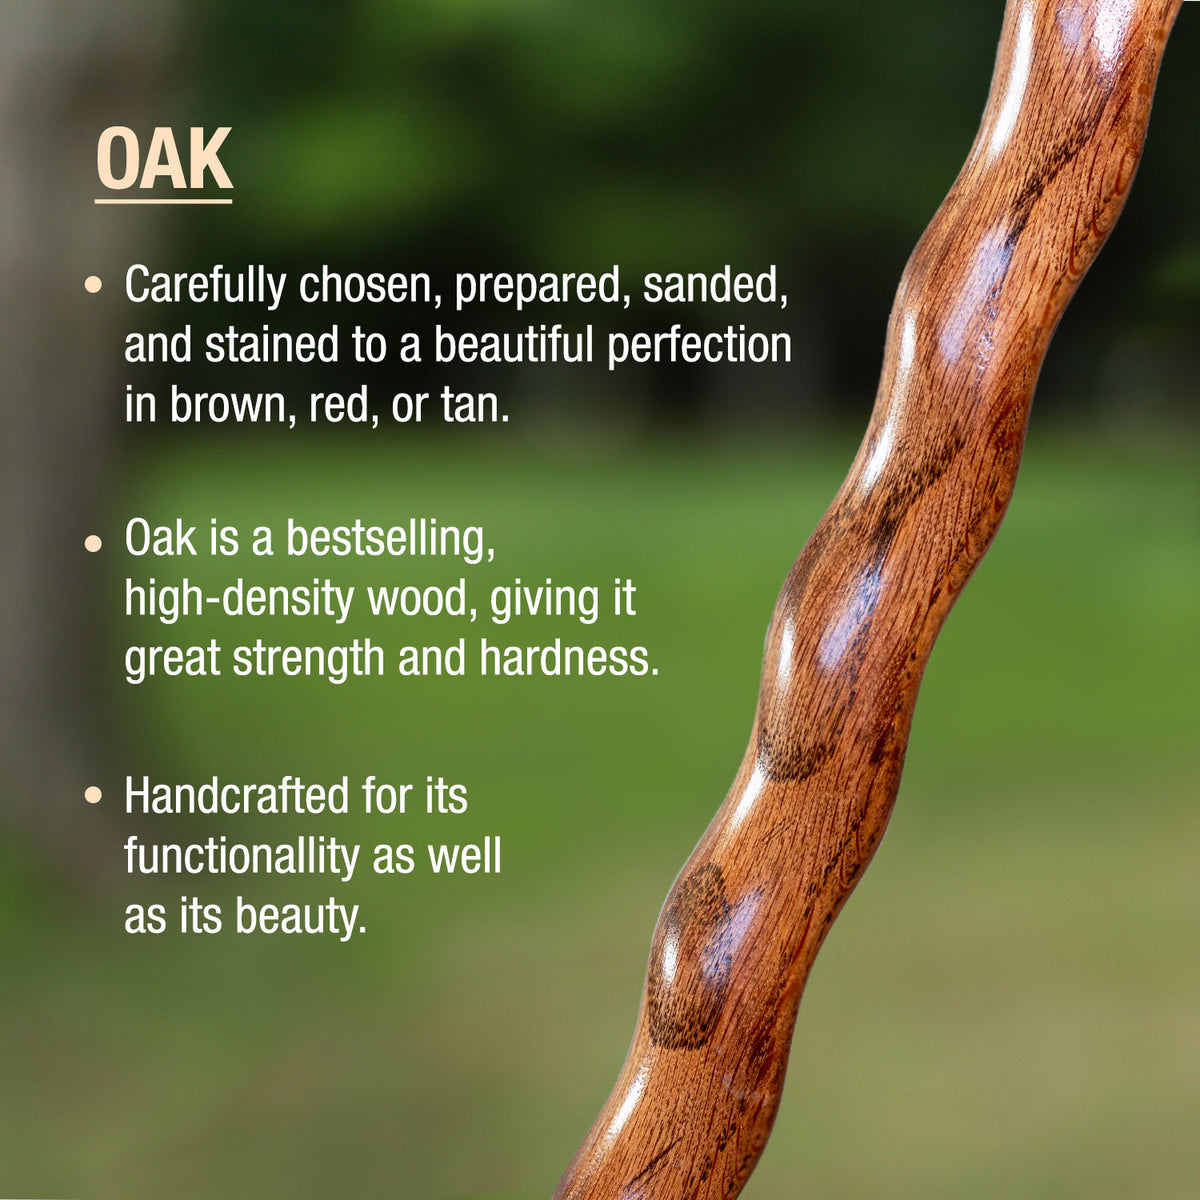 Twisted Oak Backpacker Handcrafted Walking Stick – Brazos Walking Sticks